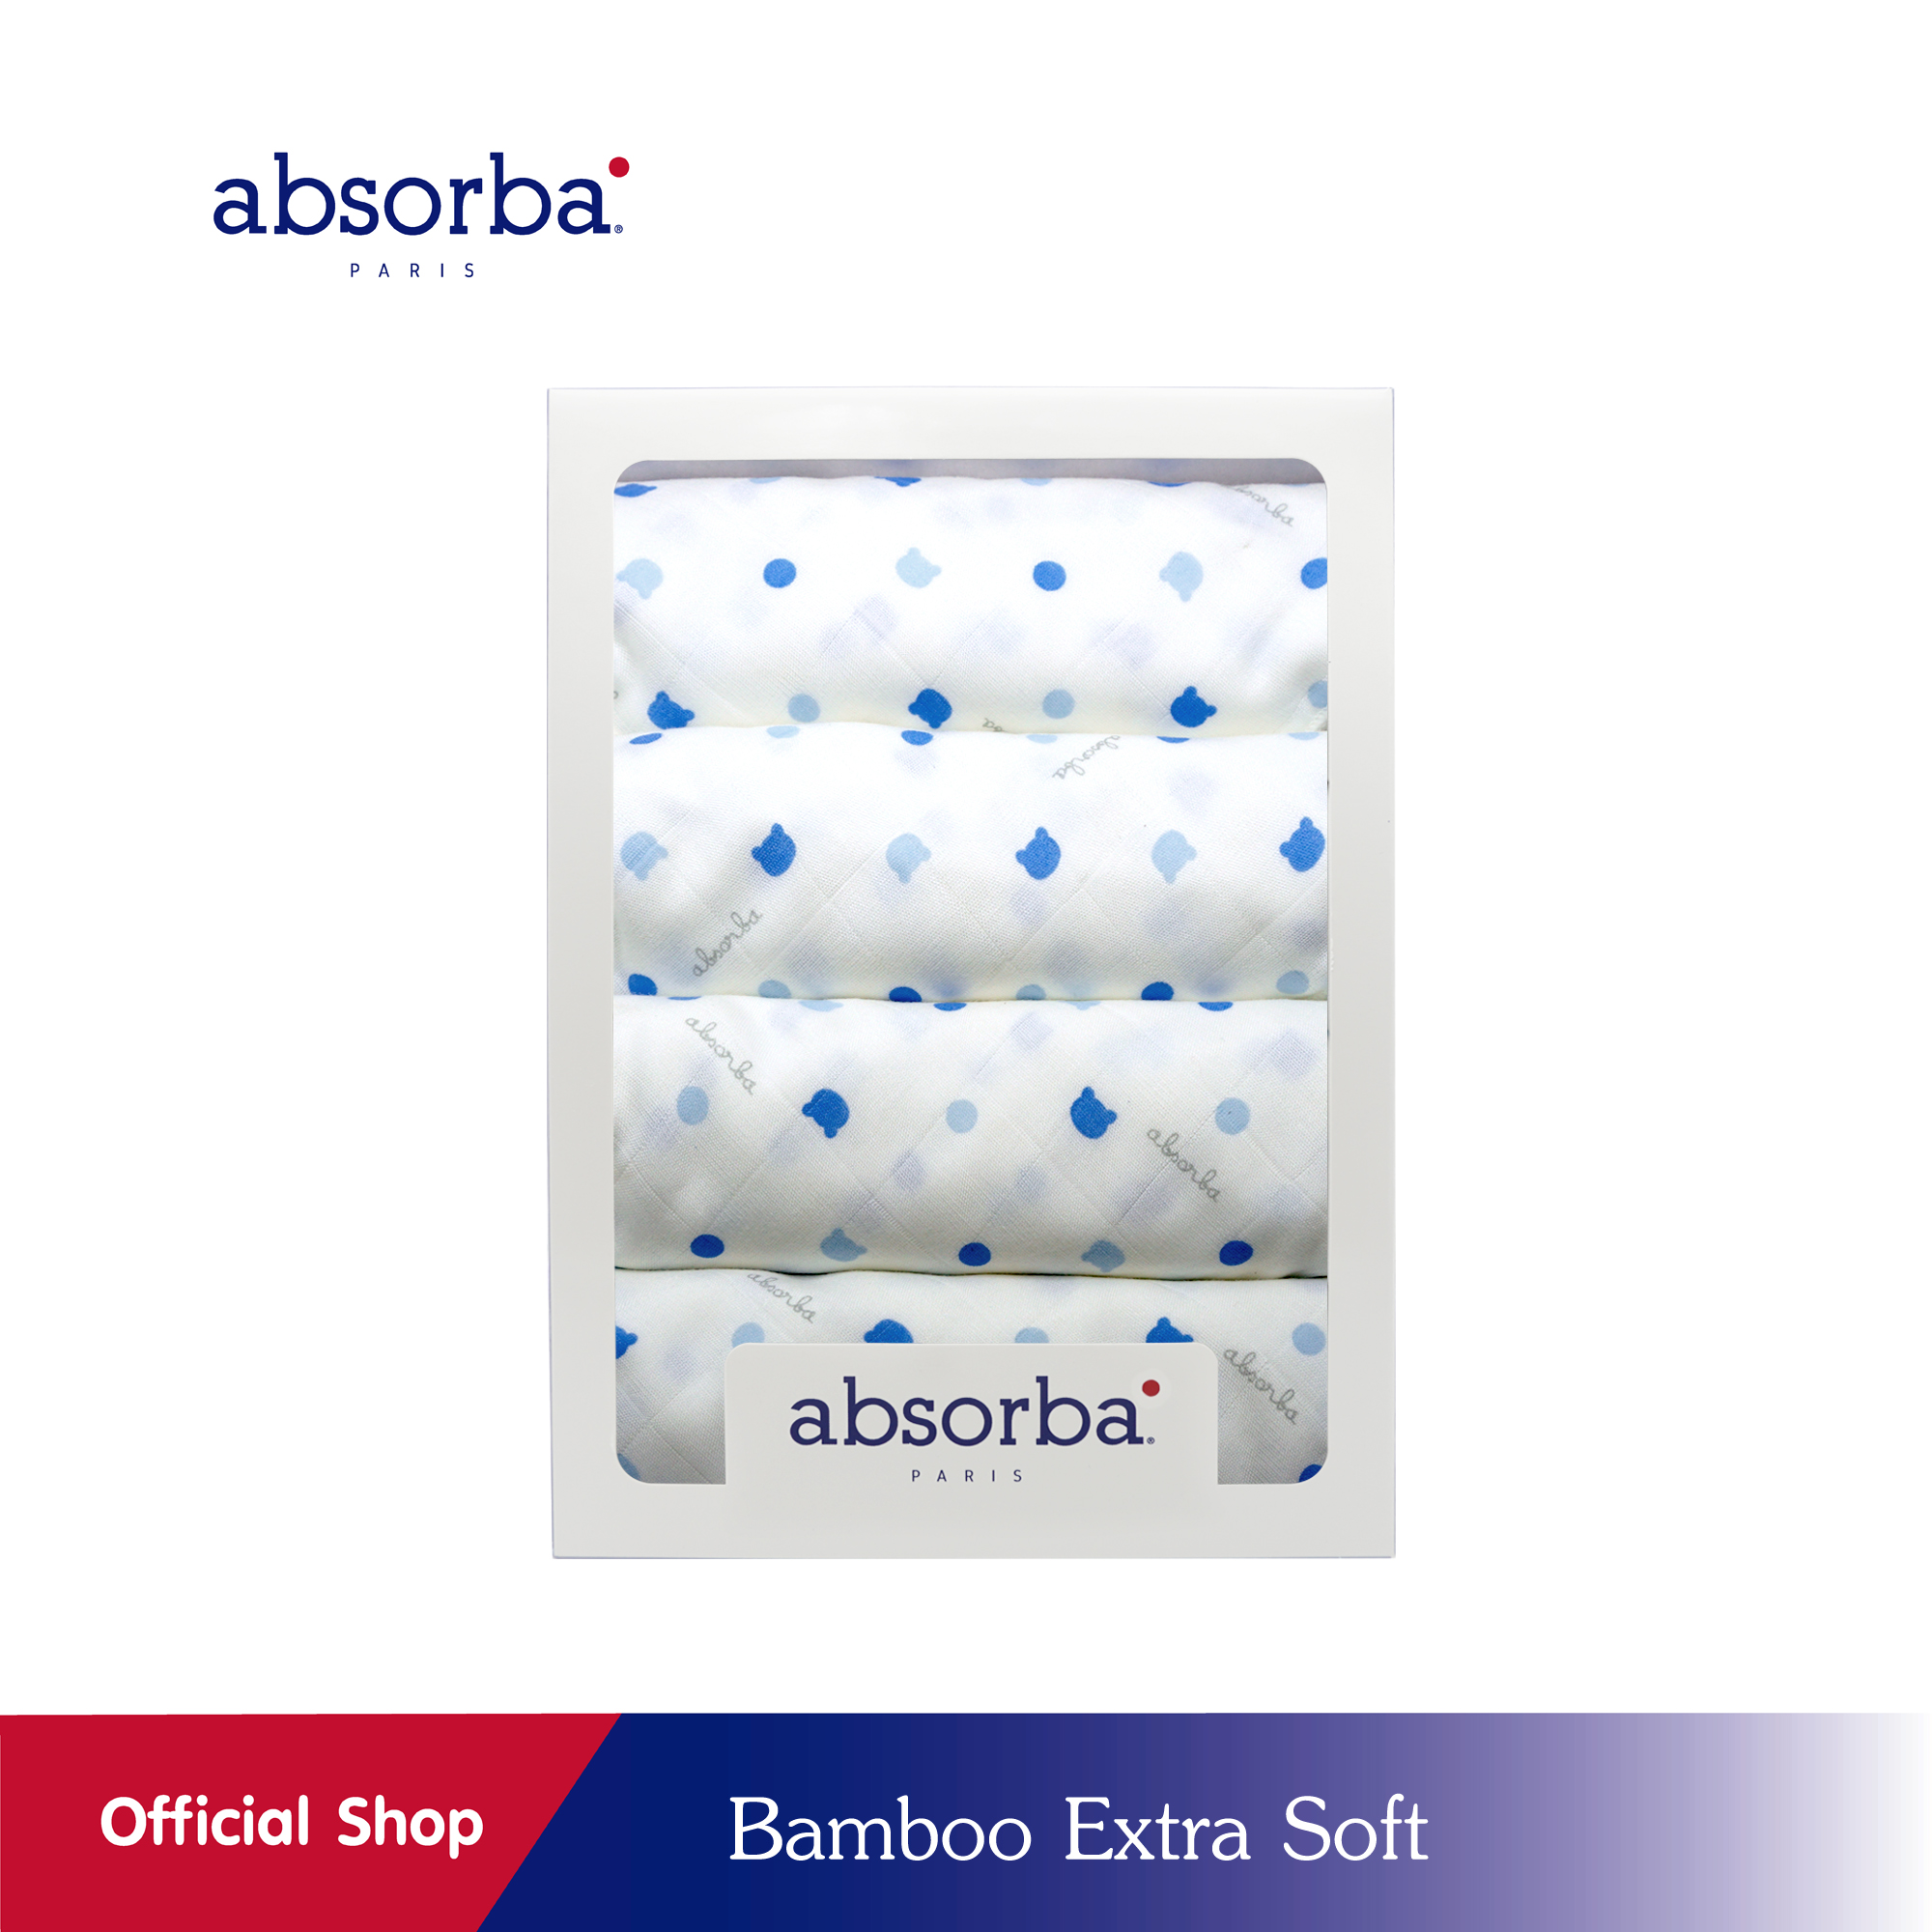 แนะนำ absorba (แอ๊บซอร์บา) ผ้าอ้อมผ้าเยื่อไผ่ Bamboo Extra Soft สีฟ้า นุ่ม ลื่น สัมผัสเย็น ยับยั้งแบคทีเรีย ไม่มีกลิ่นอับ ขนาด 30x30 นิ้ว (แพ็ค 4 ผืน) - R6G140BU00